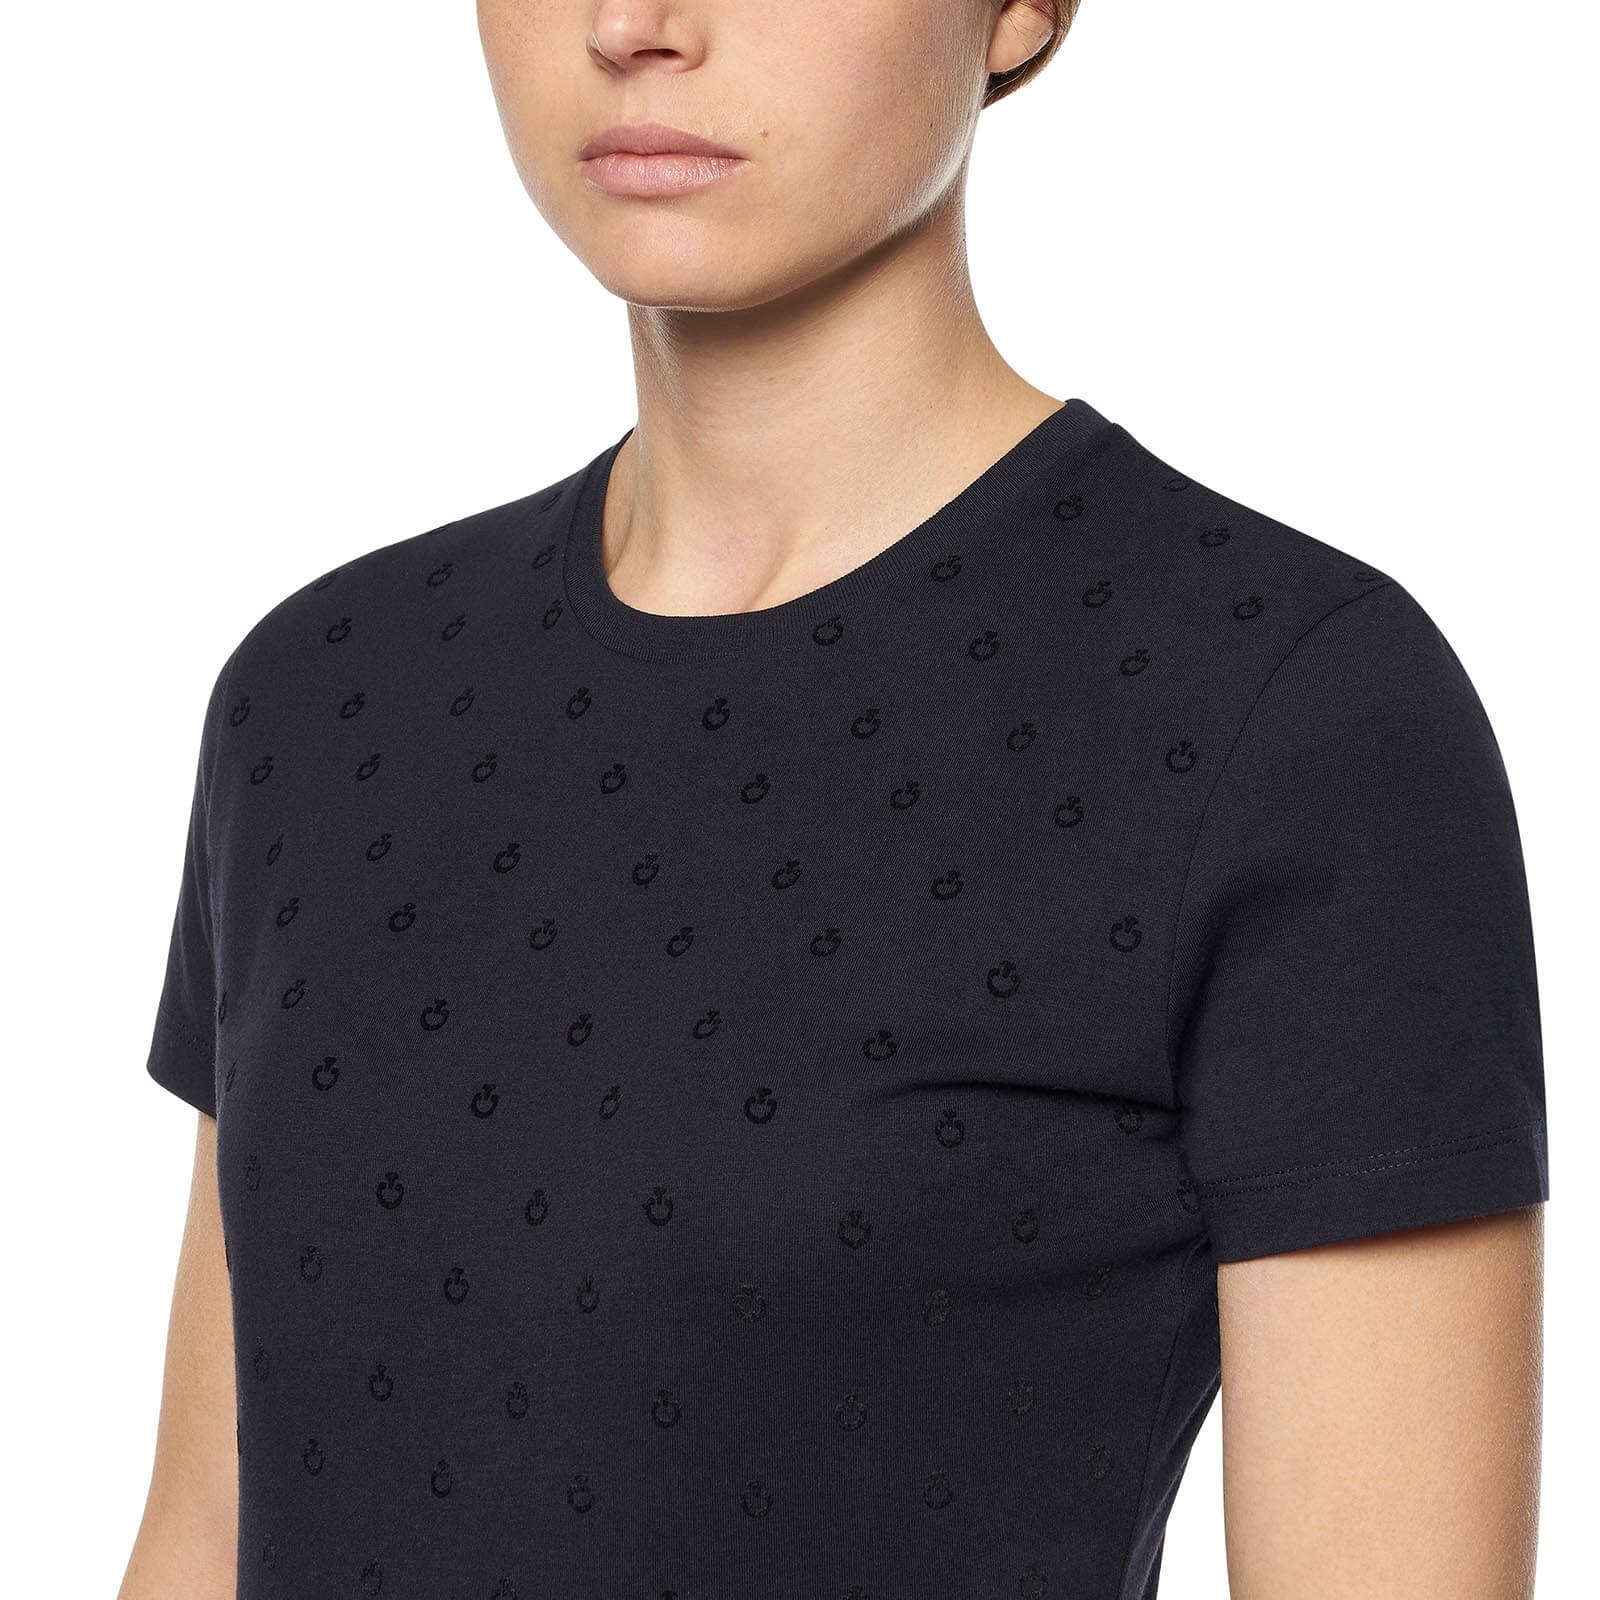 CAVALLERIA TOSCANA bequemes Damen T-Shirt mit Mini CT Flock - navy - XL - 3